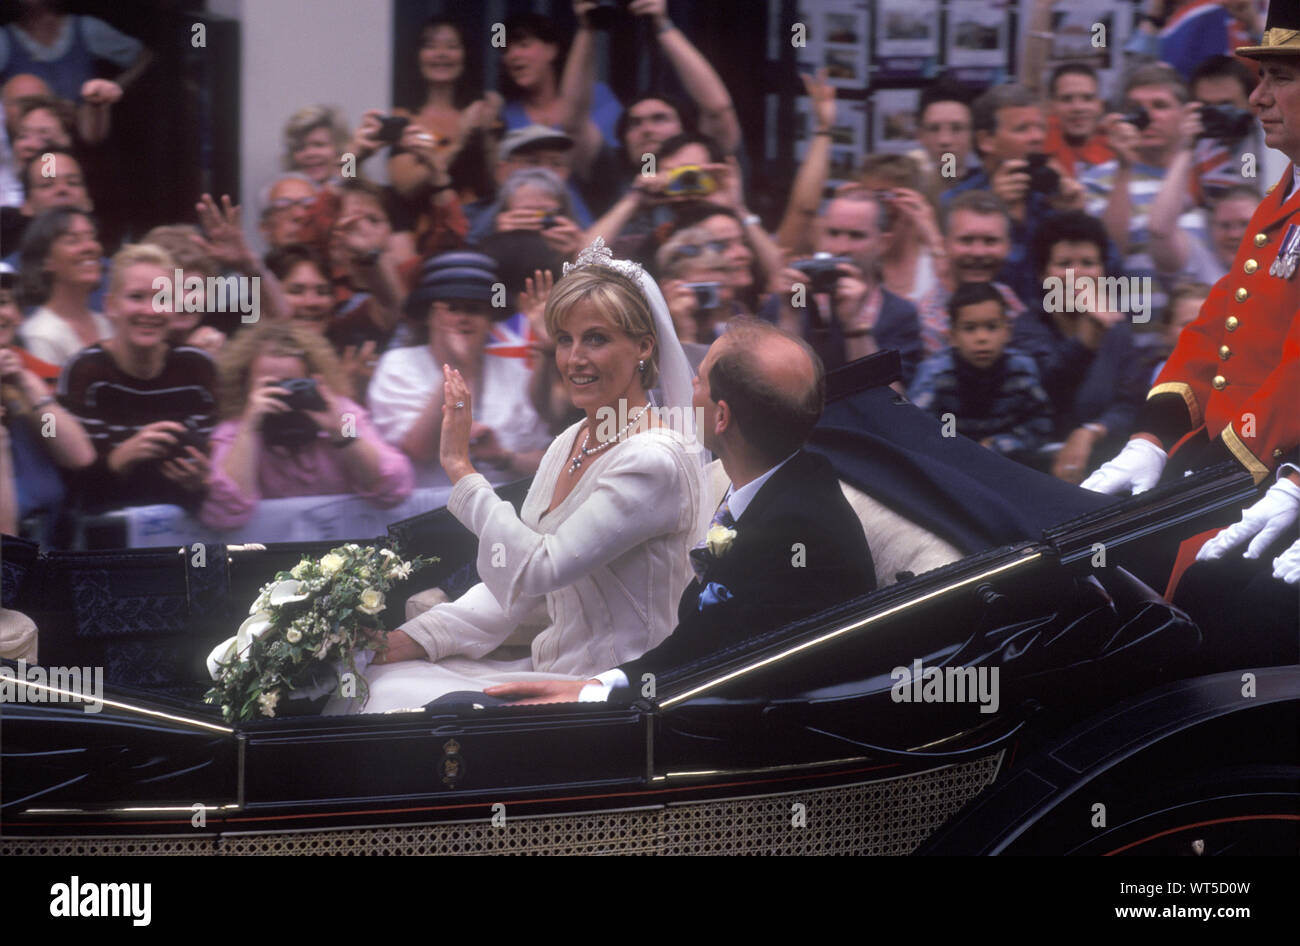 Königliche Hochzeit 1999 Prince Edward Sophie Rhys Jones. Gräfin von Wessex Earl of Wessex Windsor offener Laufwagen Verzicht auf die Menge der Zuschauer Zuschauer nach ihrer Heirat 1990 s UK HOMER SYKES Stockfoto